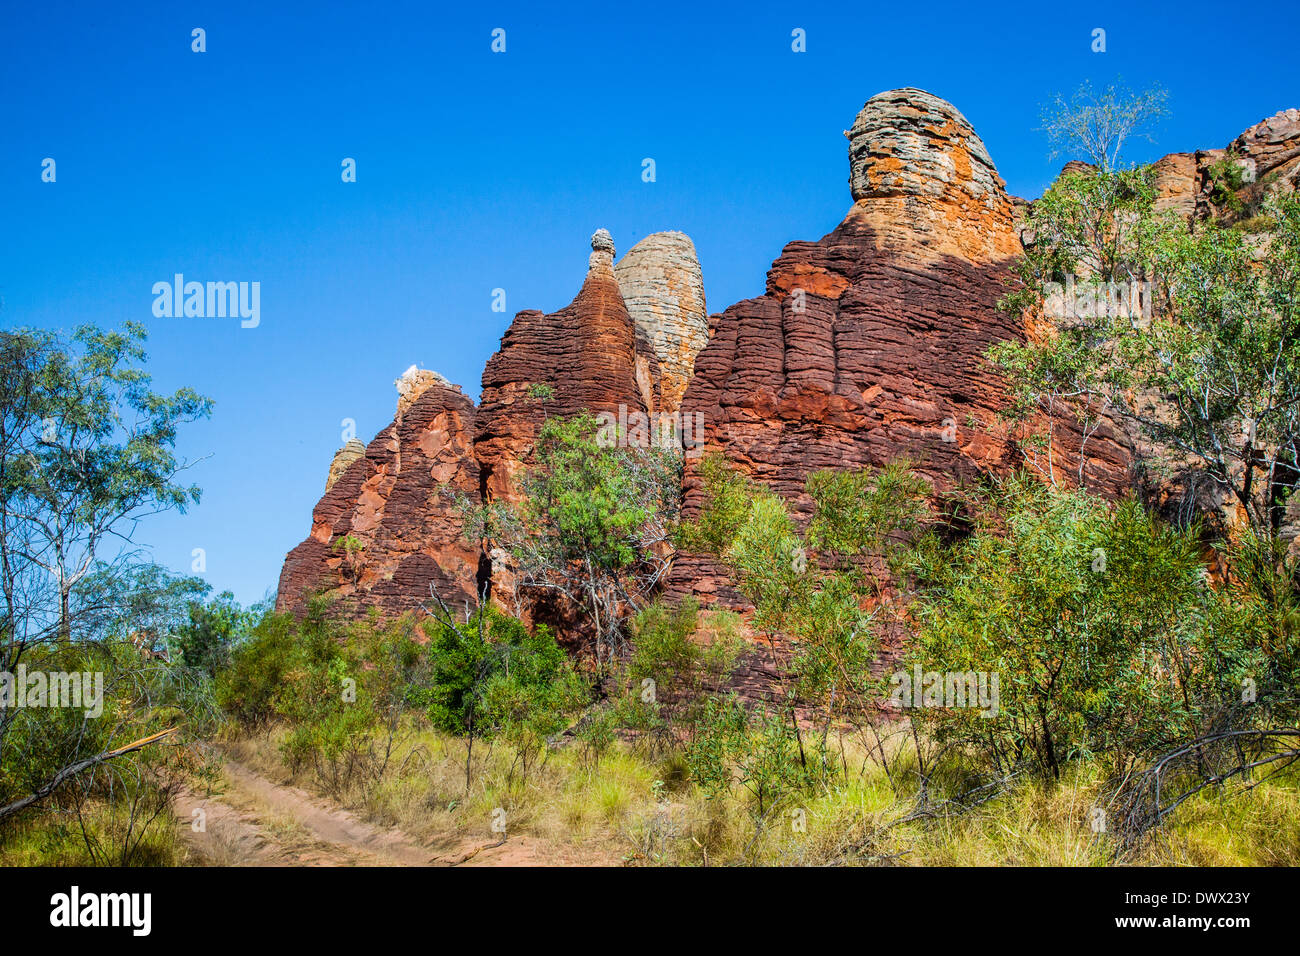 Australia, el Territorio del Norte, Limmen National Park, las torres, columnas y pináculos de la occidental ciudad perdida. Foto de stock